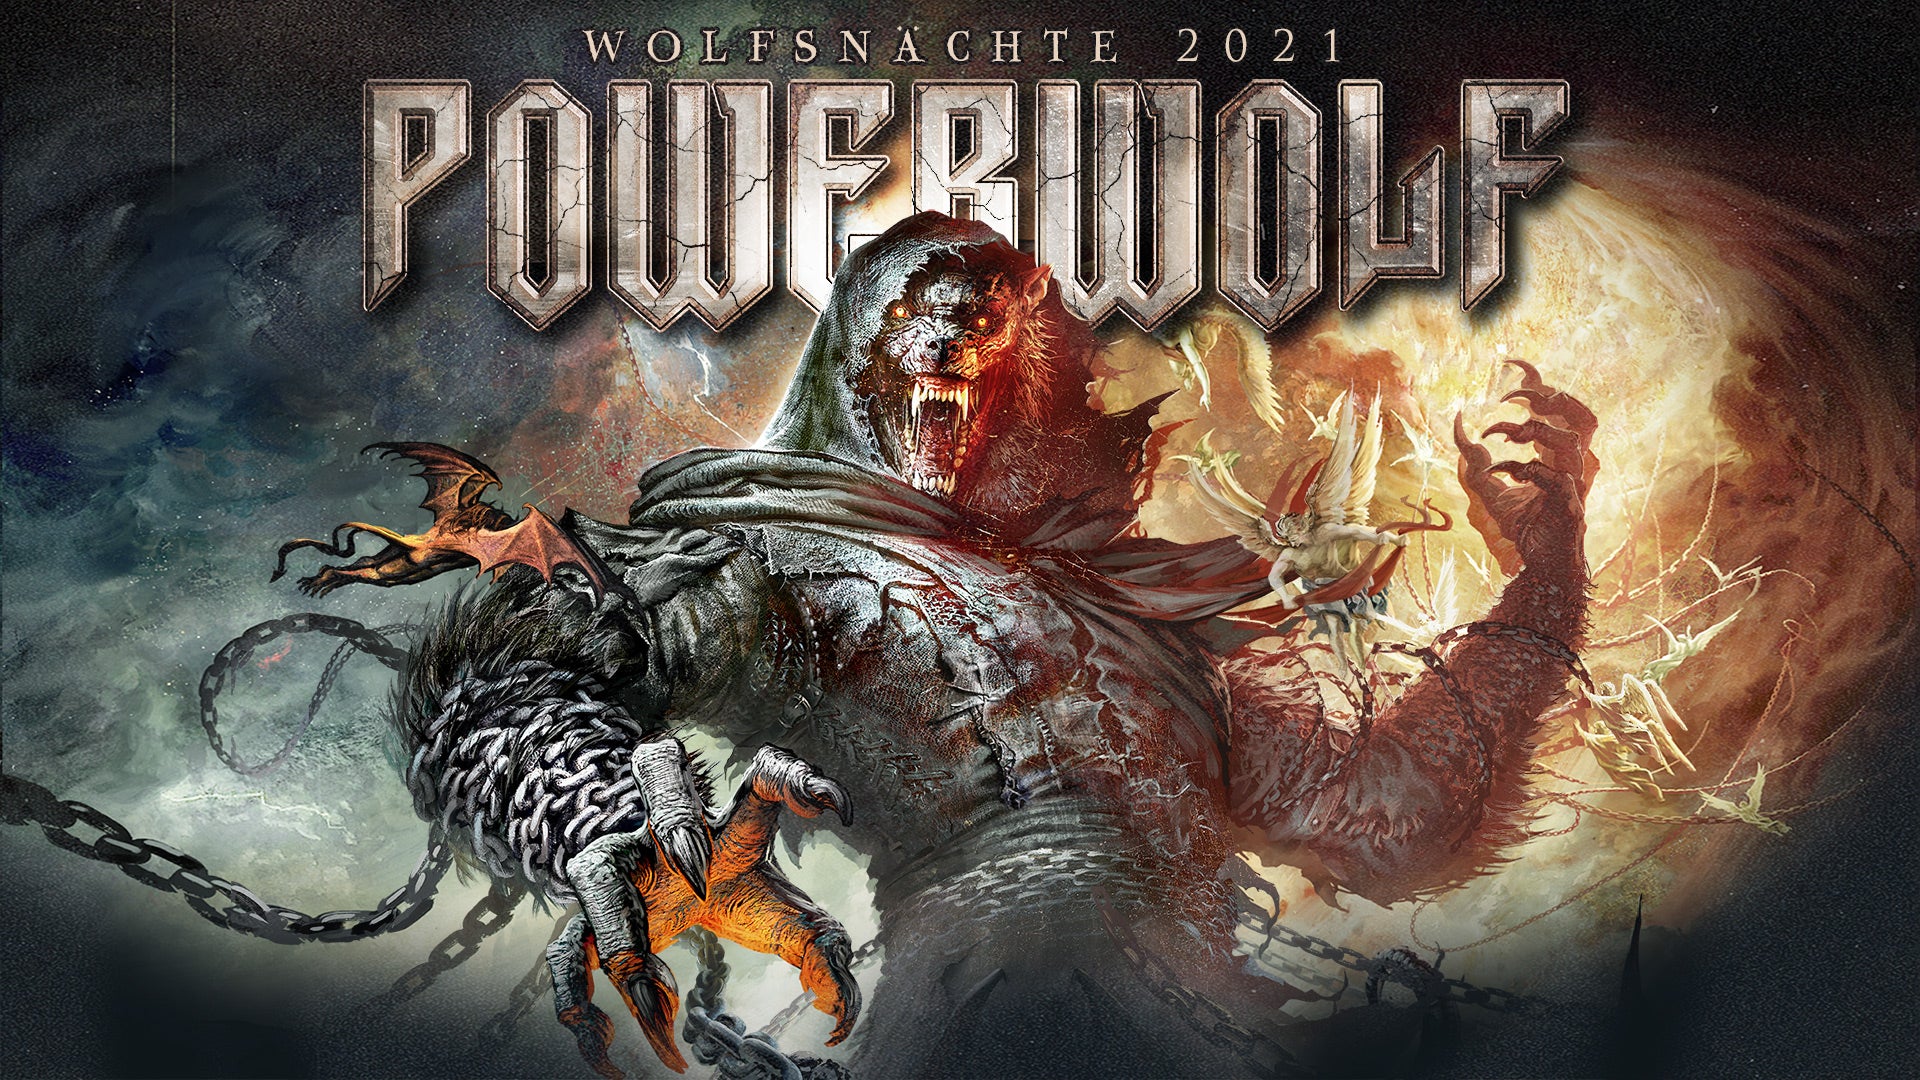 Powerwolf | Logen-Seat in der Ticketmaster Suite